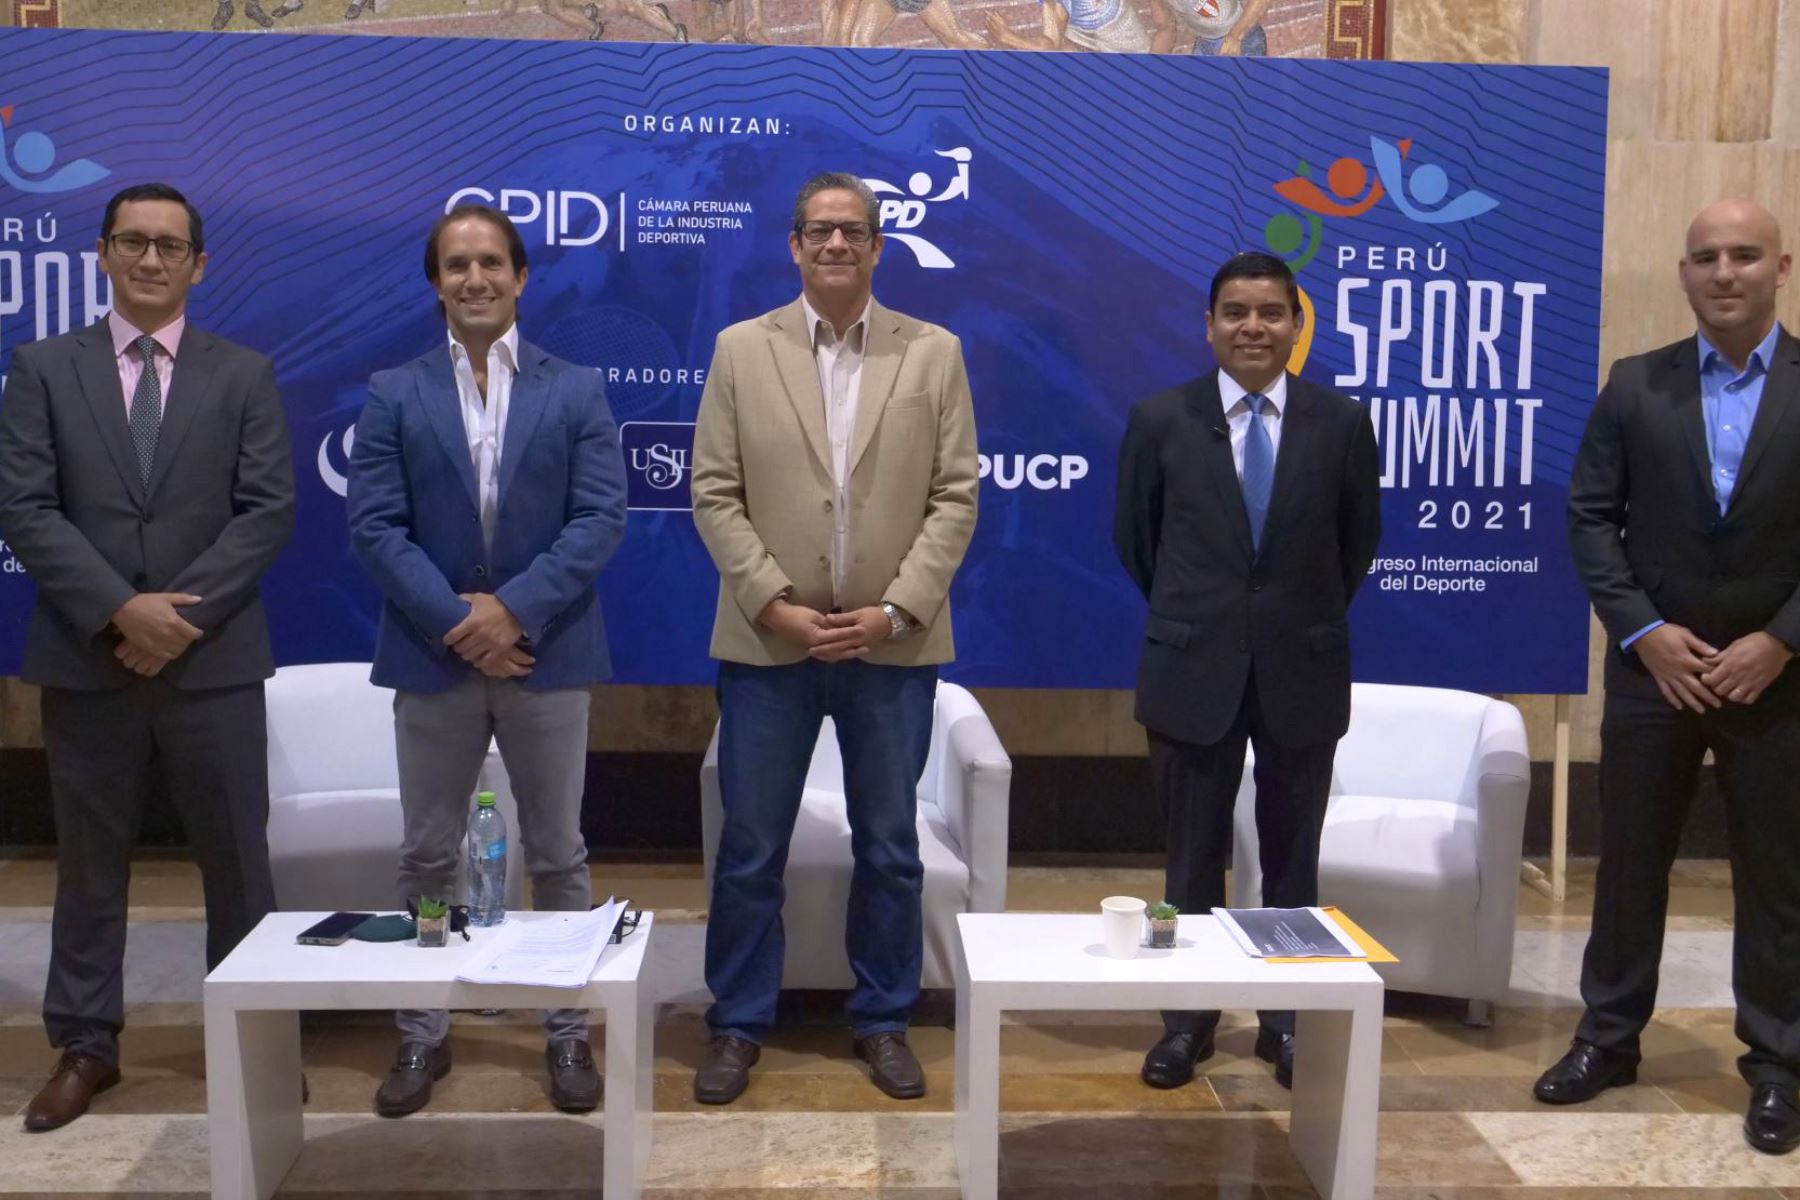 Los especialista en deporte del Perú y el extranjeros participaron de la cuarta edición del Congreso Internacional del Deporte: “Perú Sport Summit”, el cual se desarrolla cada dos años, desde el 2015.